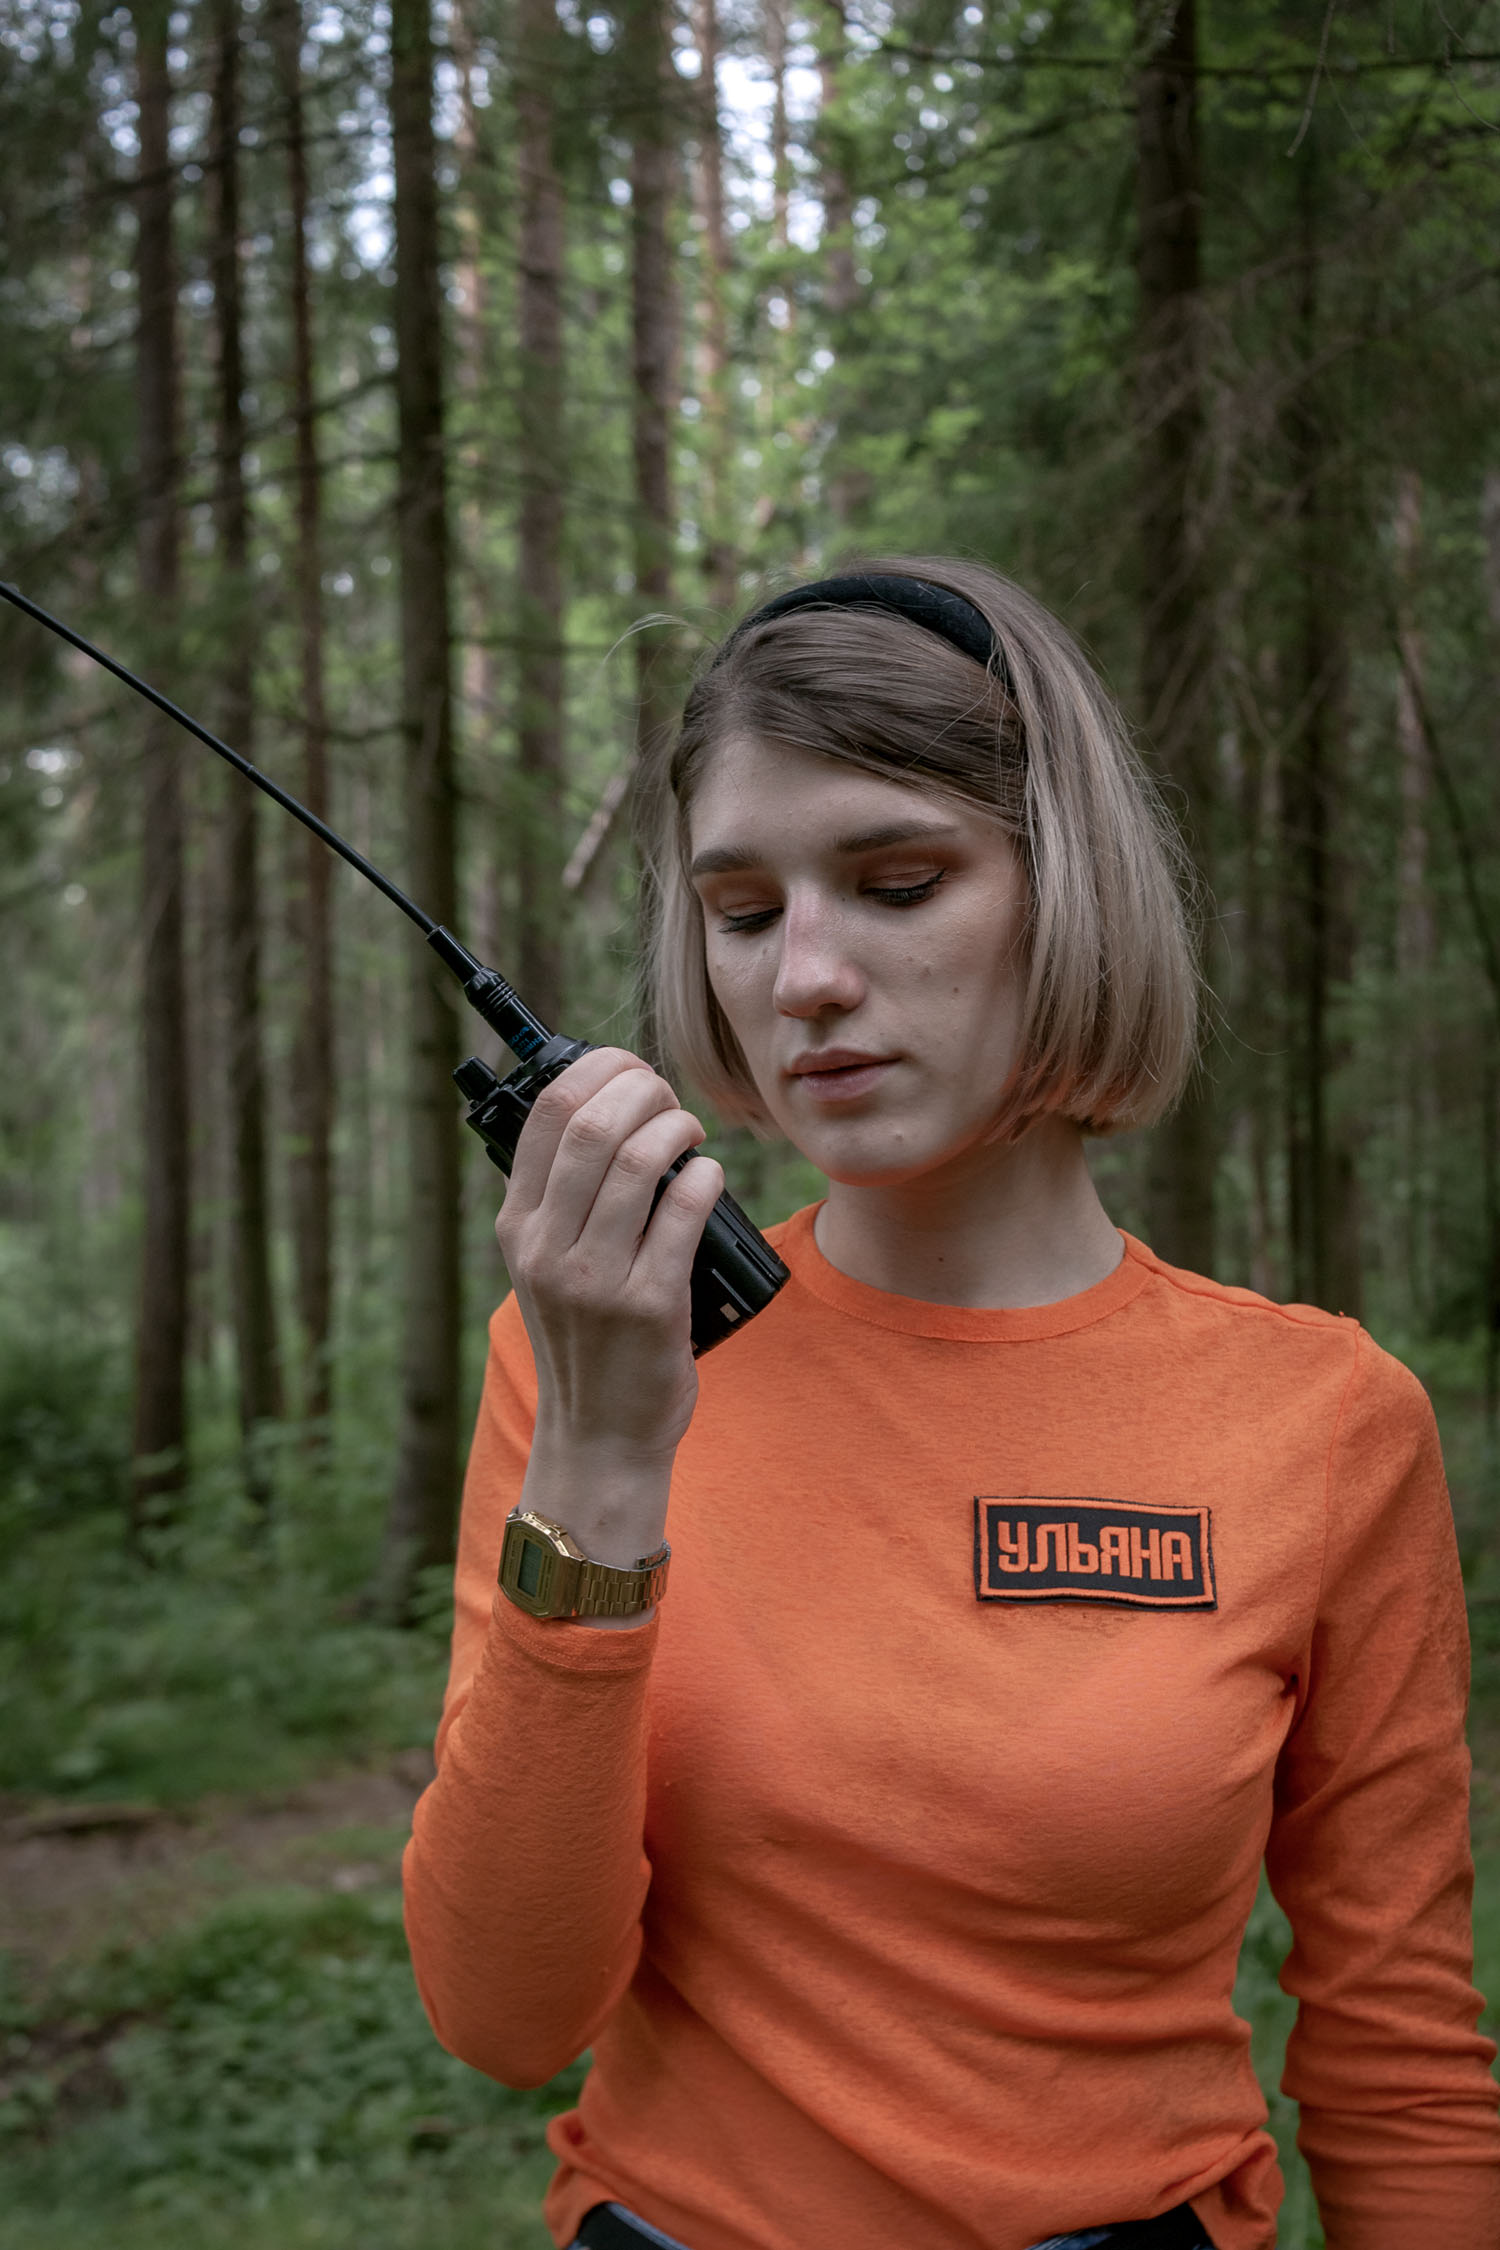 Ulyana with a walkie-talkie in Dibuny village, Leningrad region.